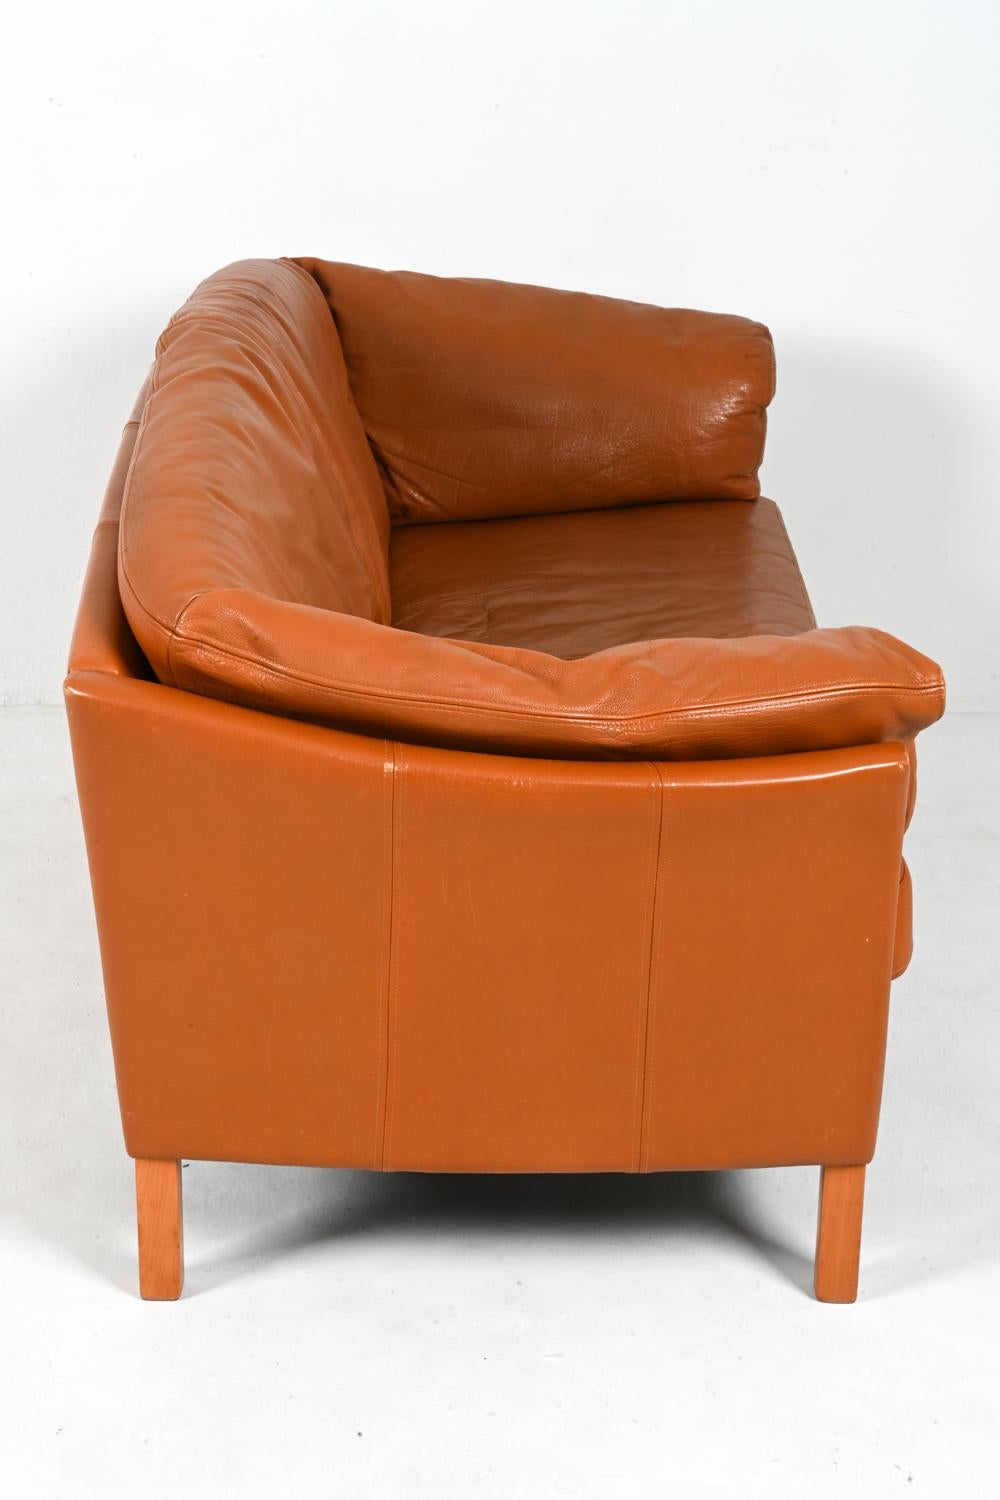 Mogens Hansen Danish Modern Two-Seat Sofa in Leather & Oak For Sale 4